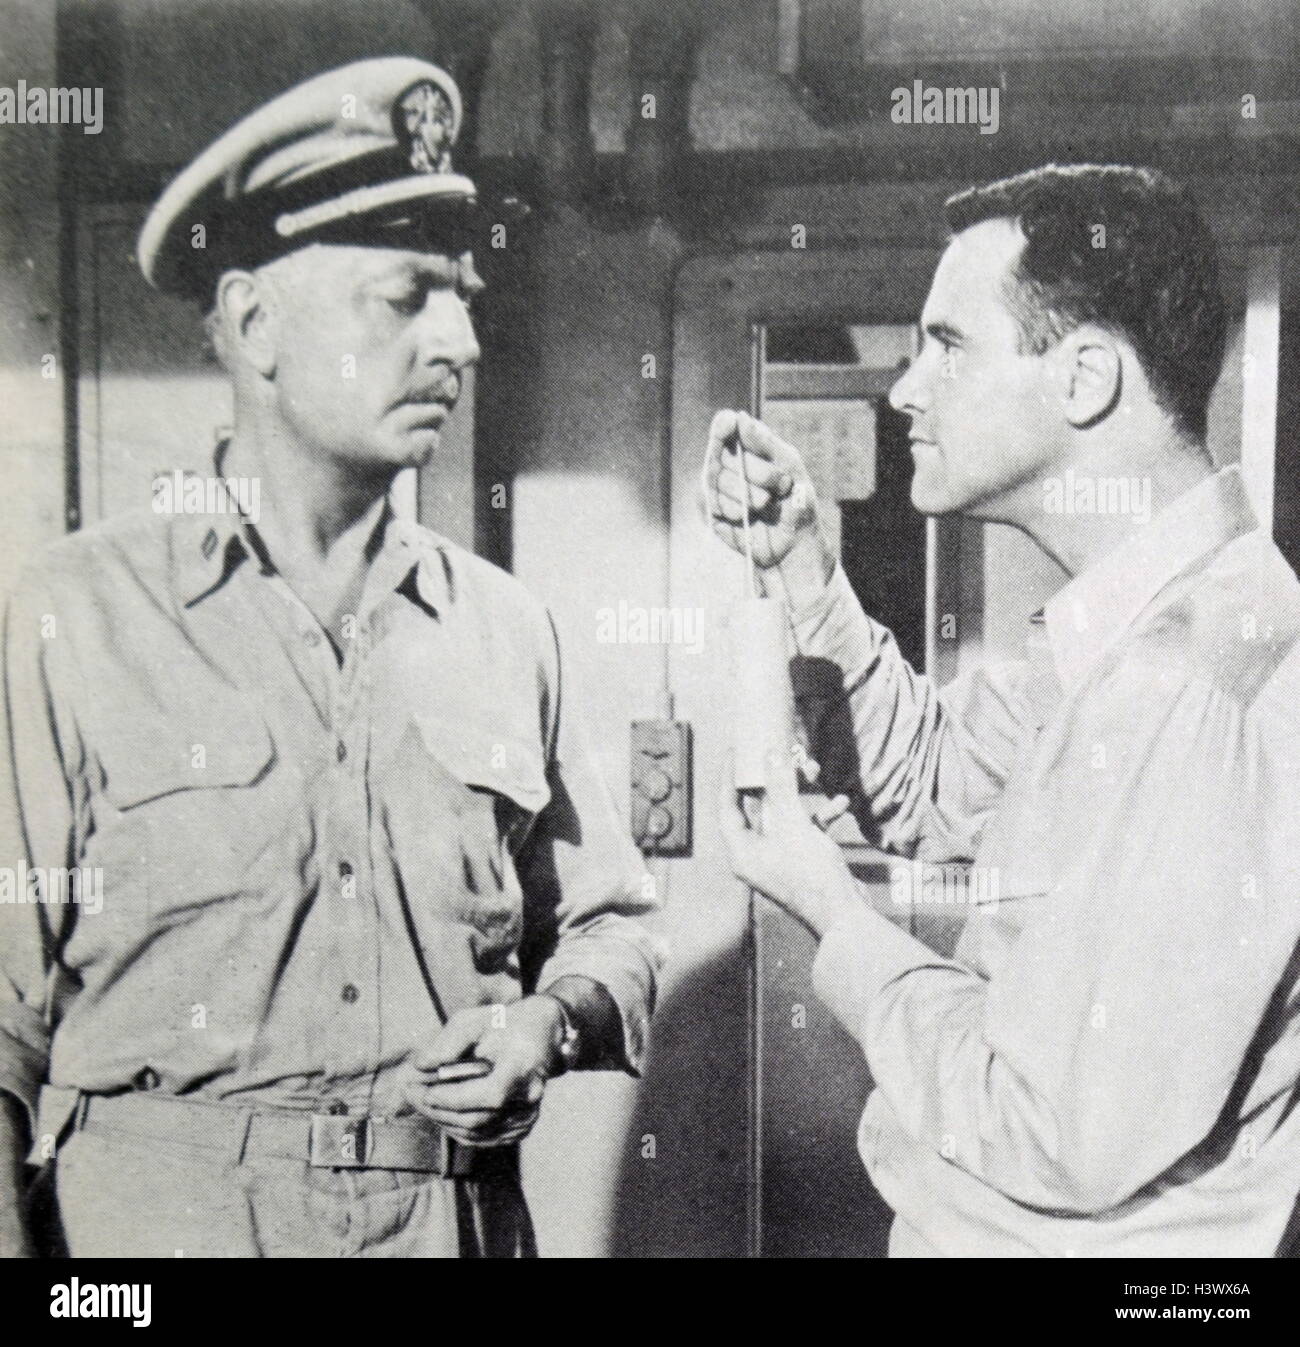 Film still aus "Mister Roberts" mit Jack Lemmon (1925 – 2001) und William Powell (1892-1984). Vom 20. Jahrhundert Stockfoto